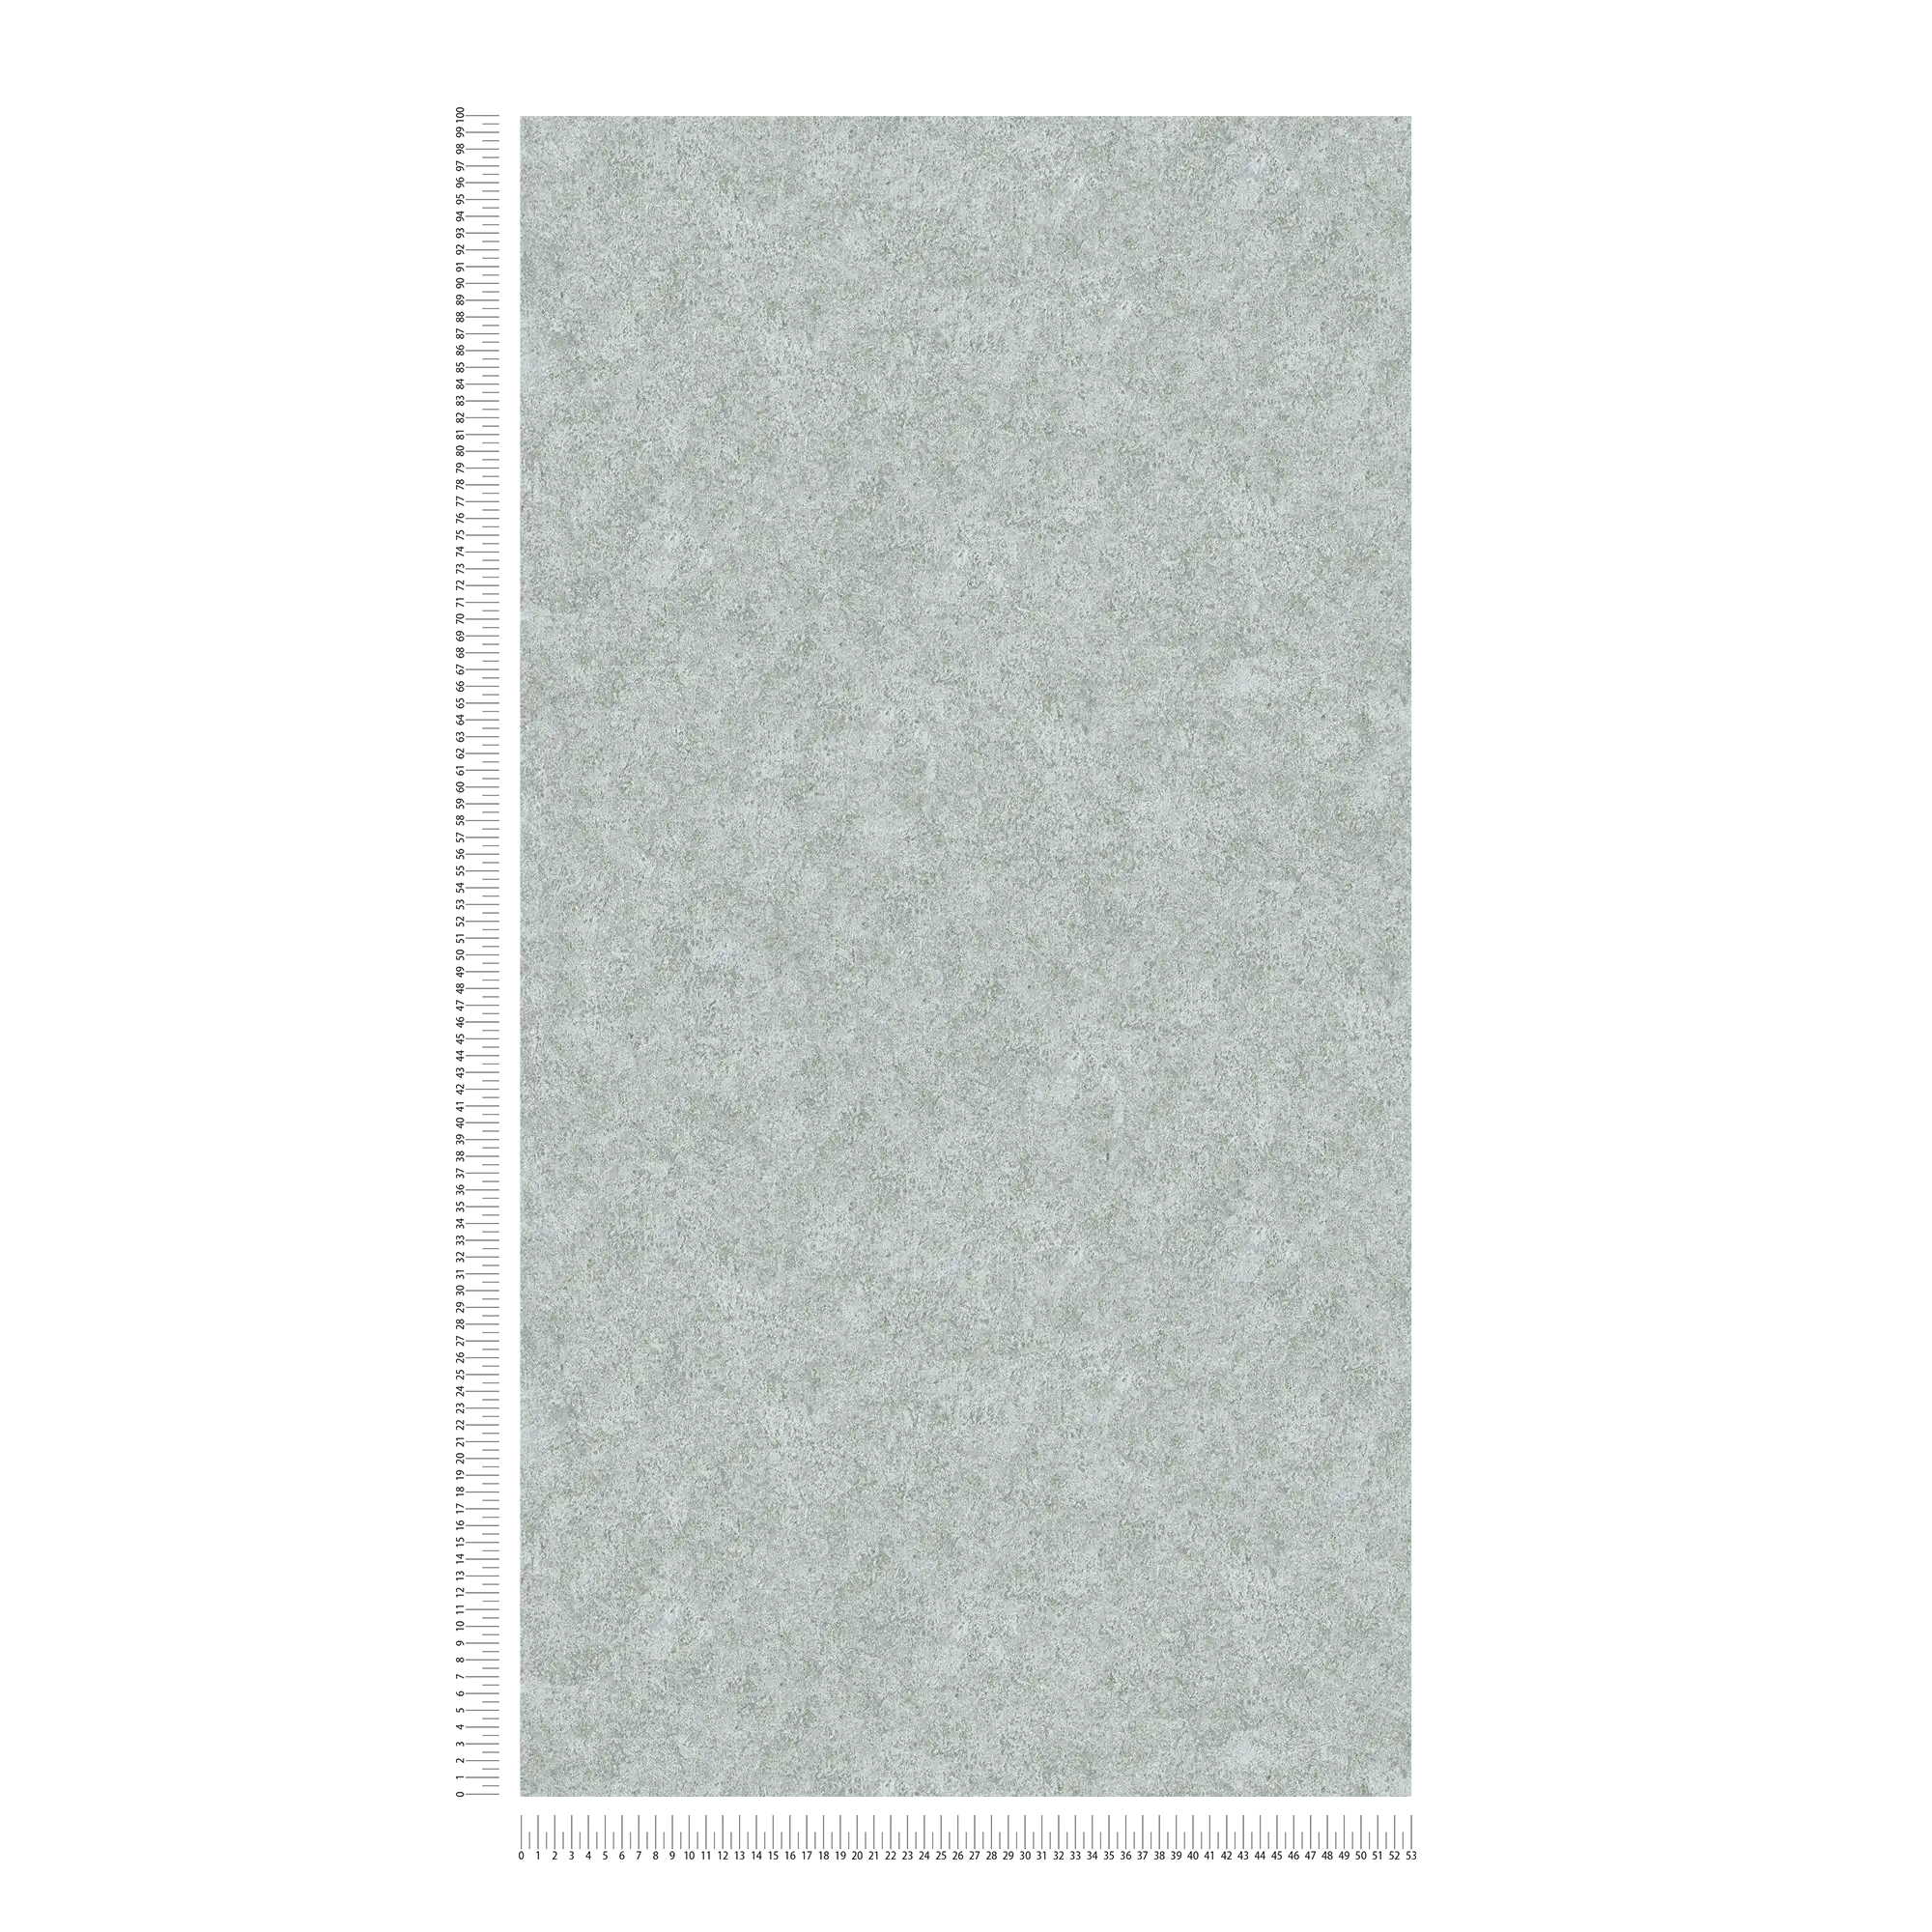             Papel pintado gris con aspecto de piedra natural moteada
        